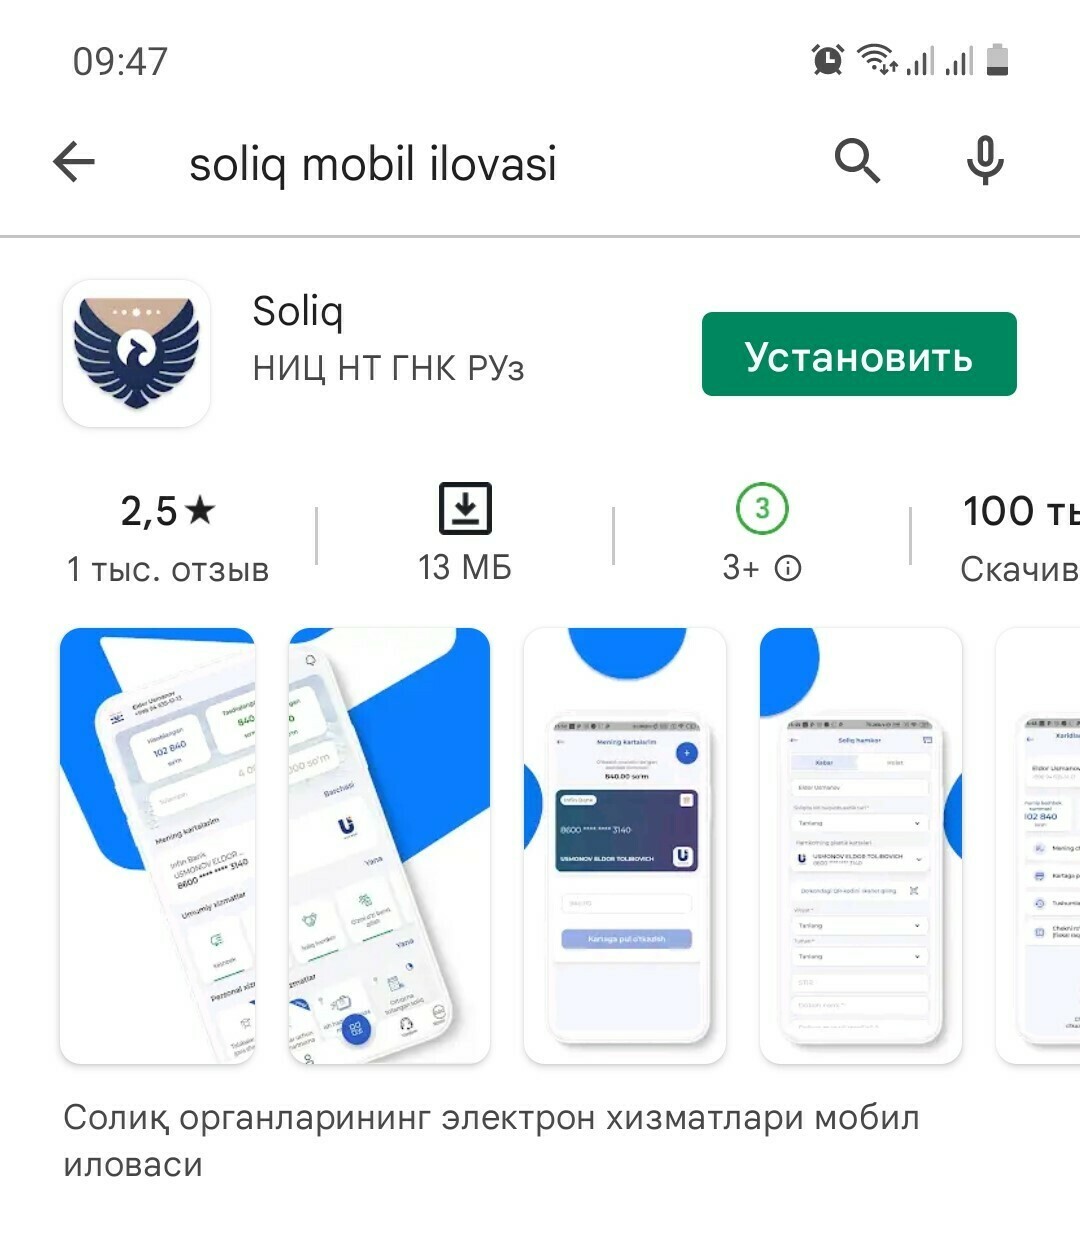 New soliq uz. Мобильное приложение soliq. Soliq мобил. Soliq mobil ilovasi. Приложение soliq логотип.